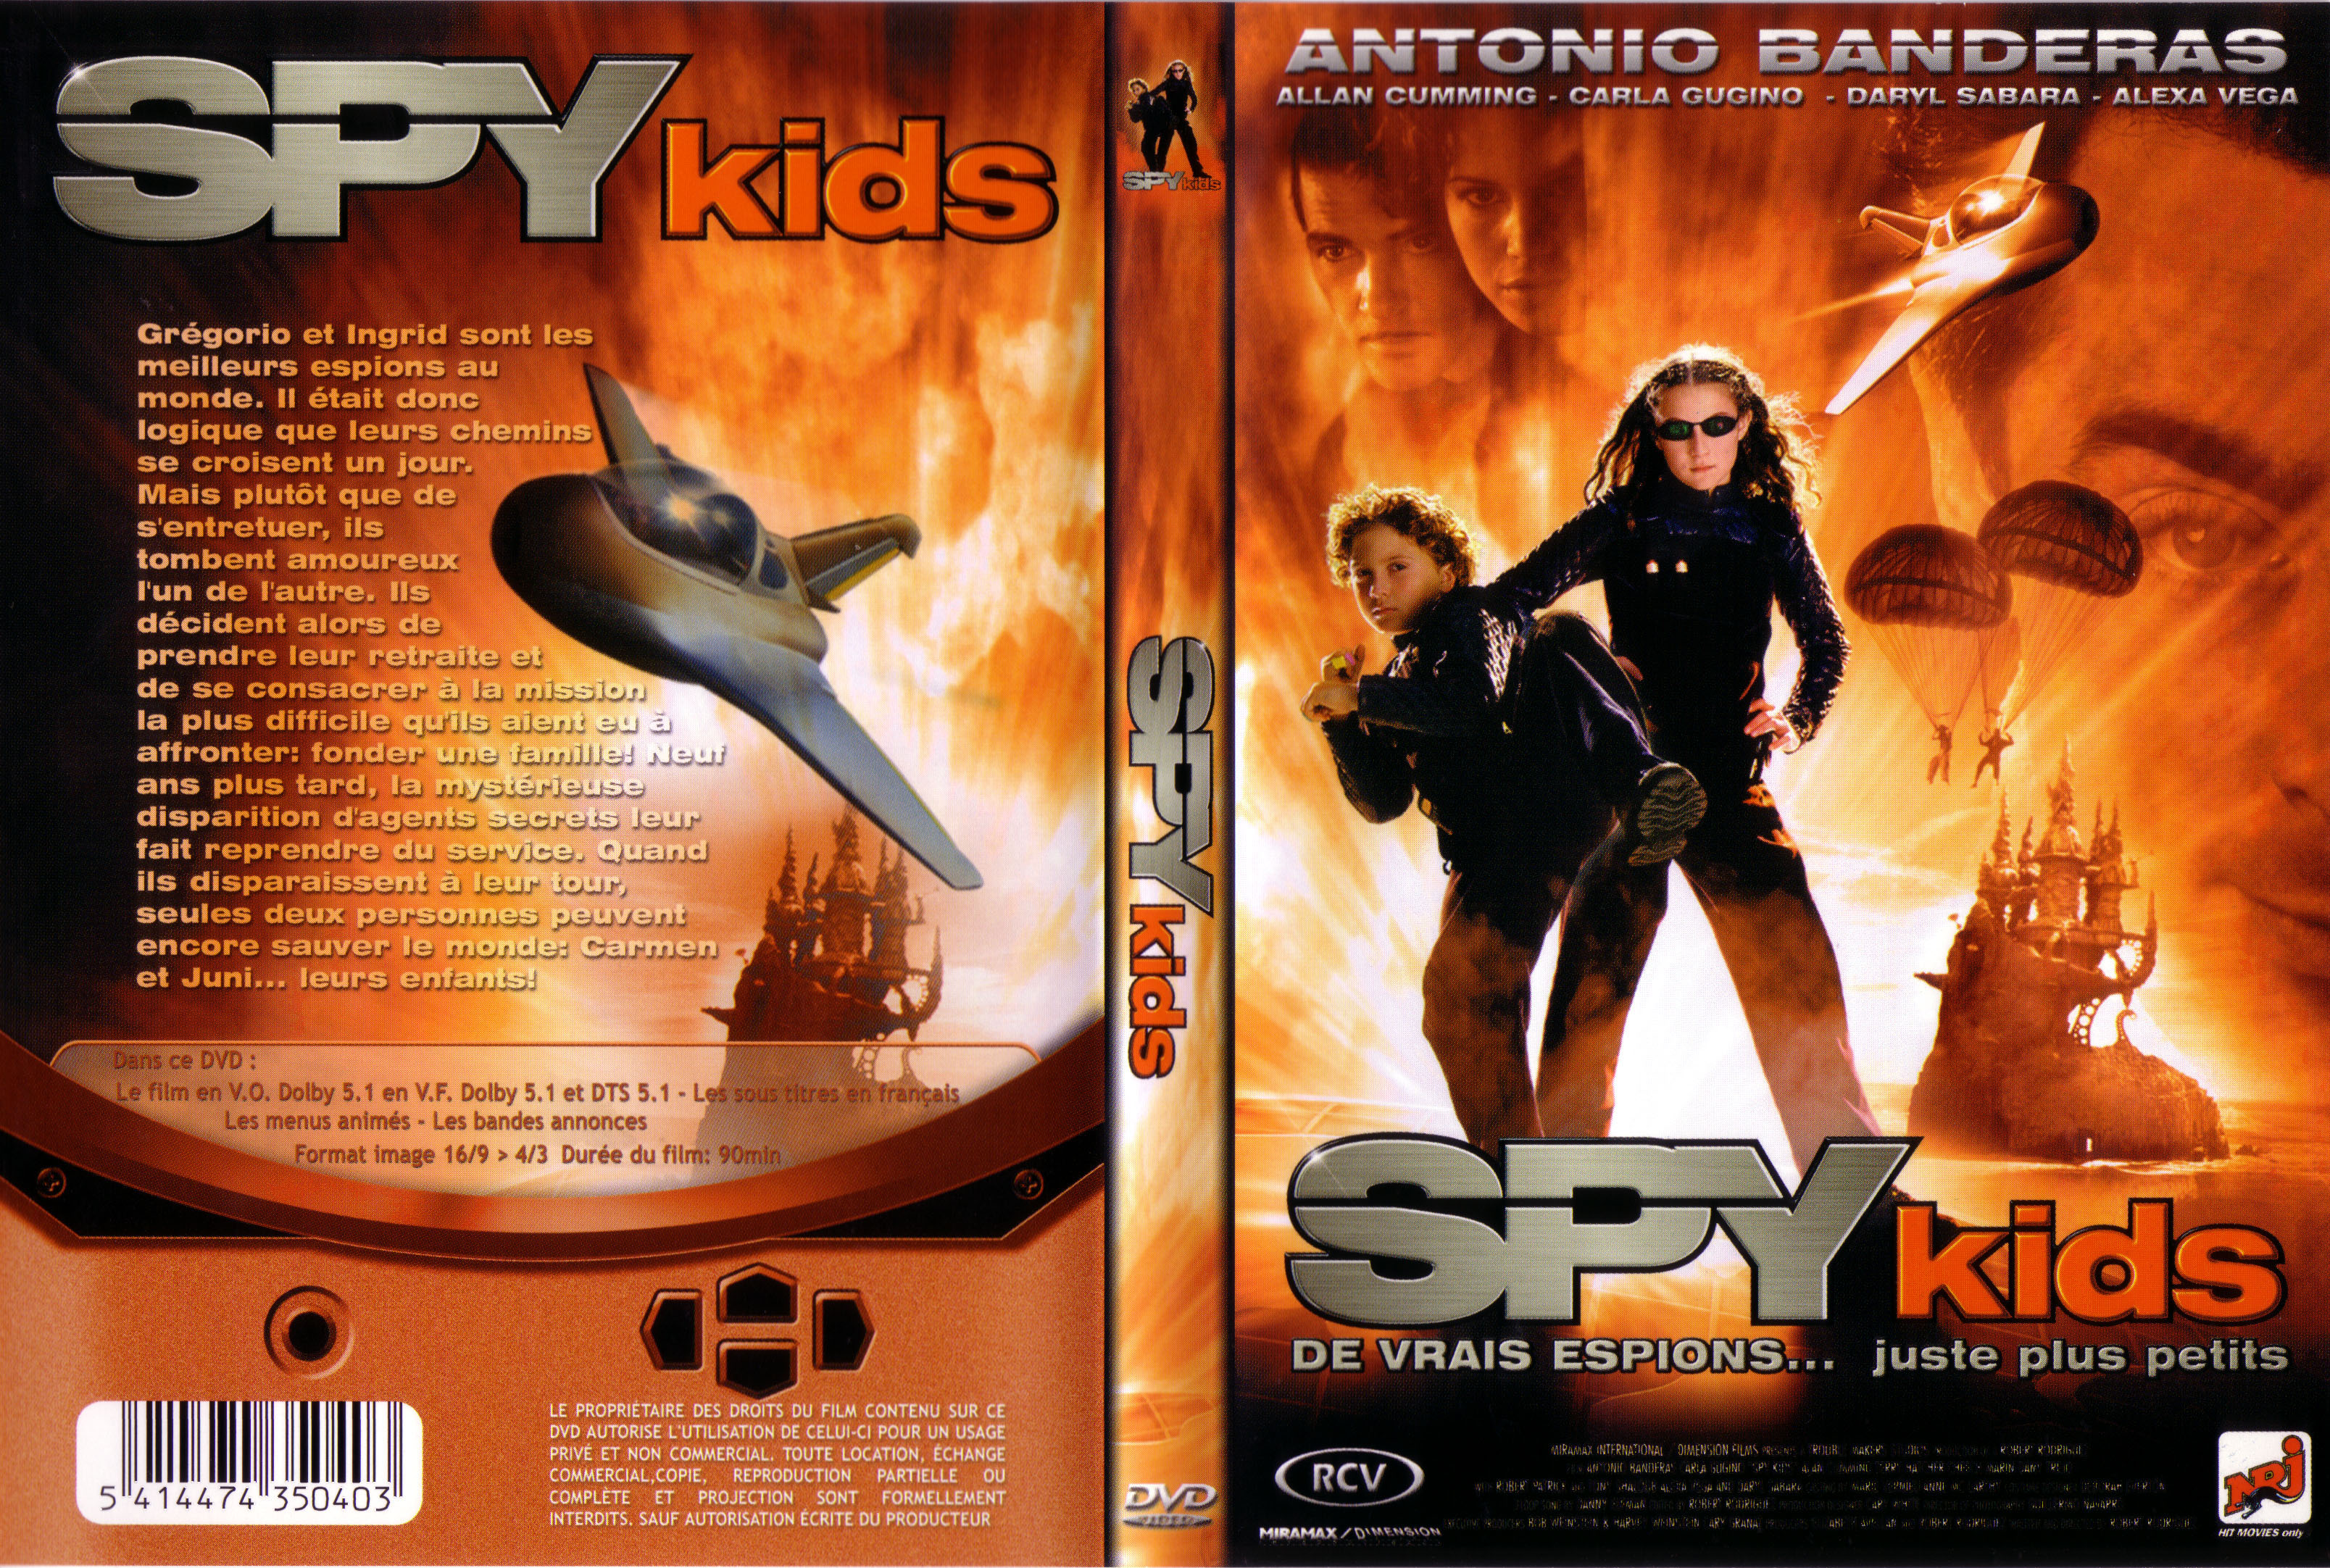 Jaquette DVD Spy kids v2